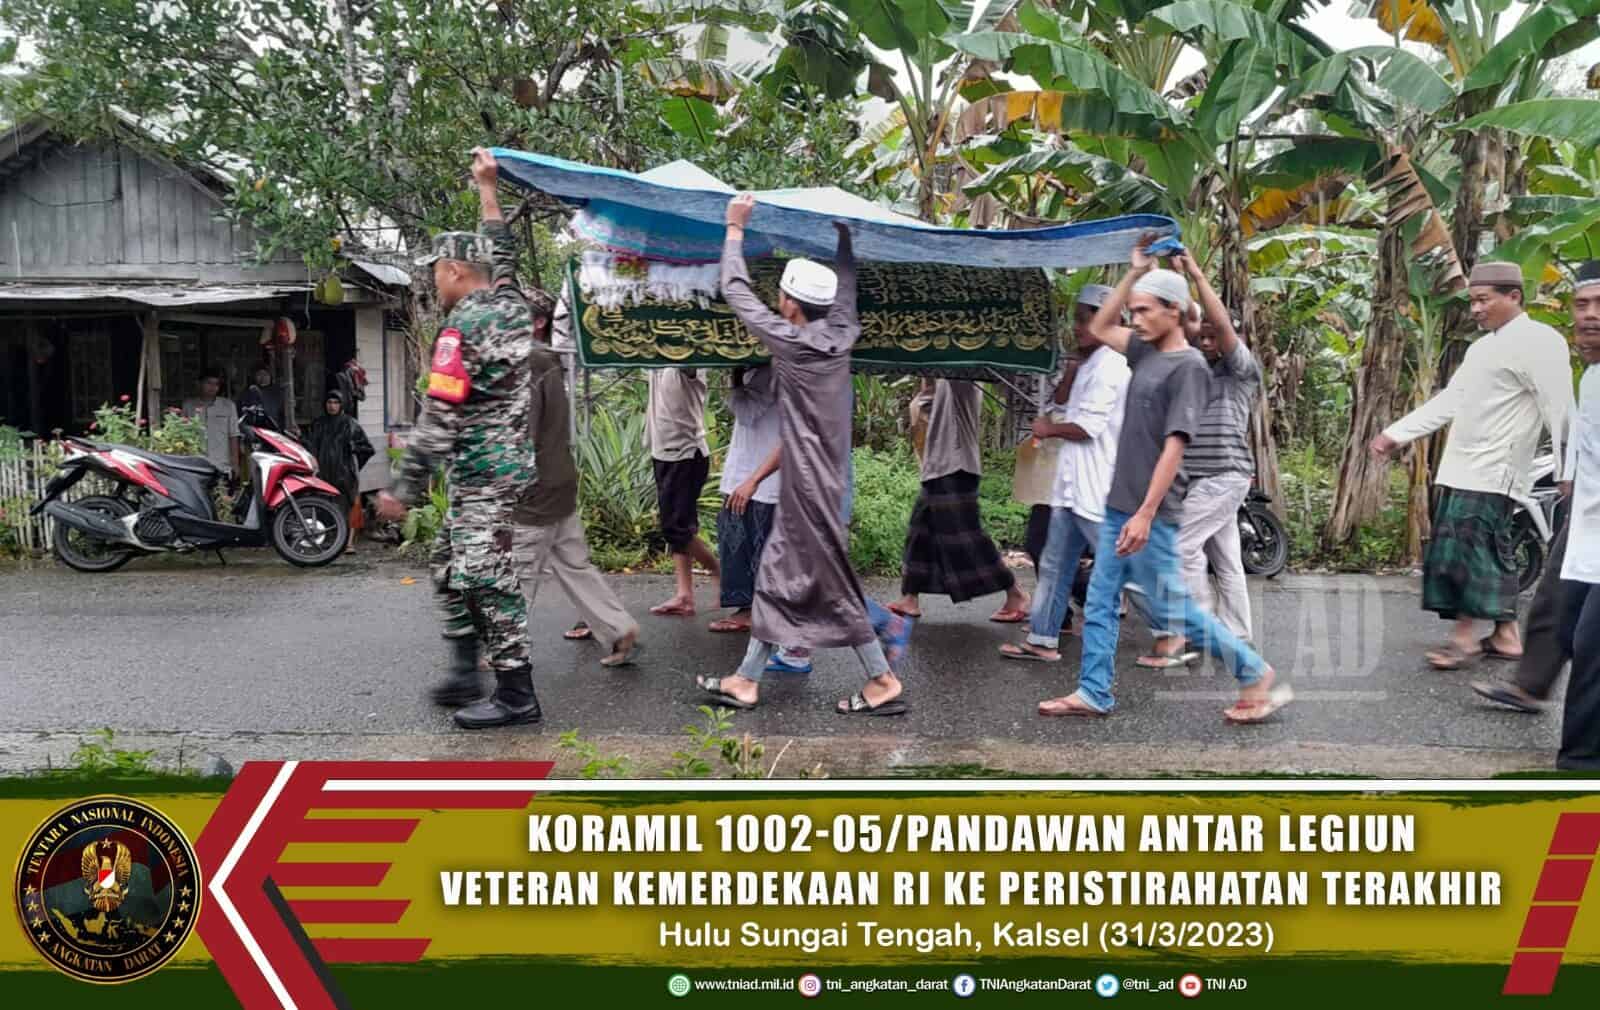 Koramil 1002-05/Pandawan Antar Legiun Veteran Kemerdekaan RI ke Peristirahatan Terakhir